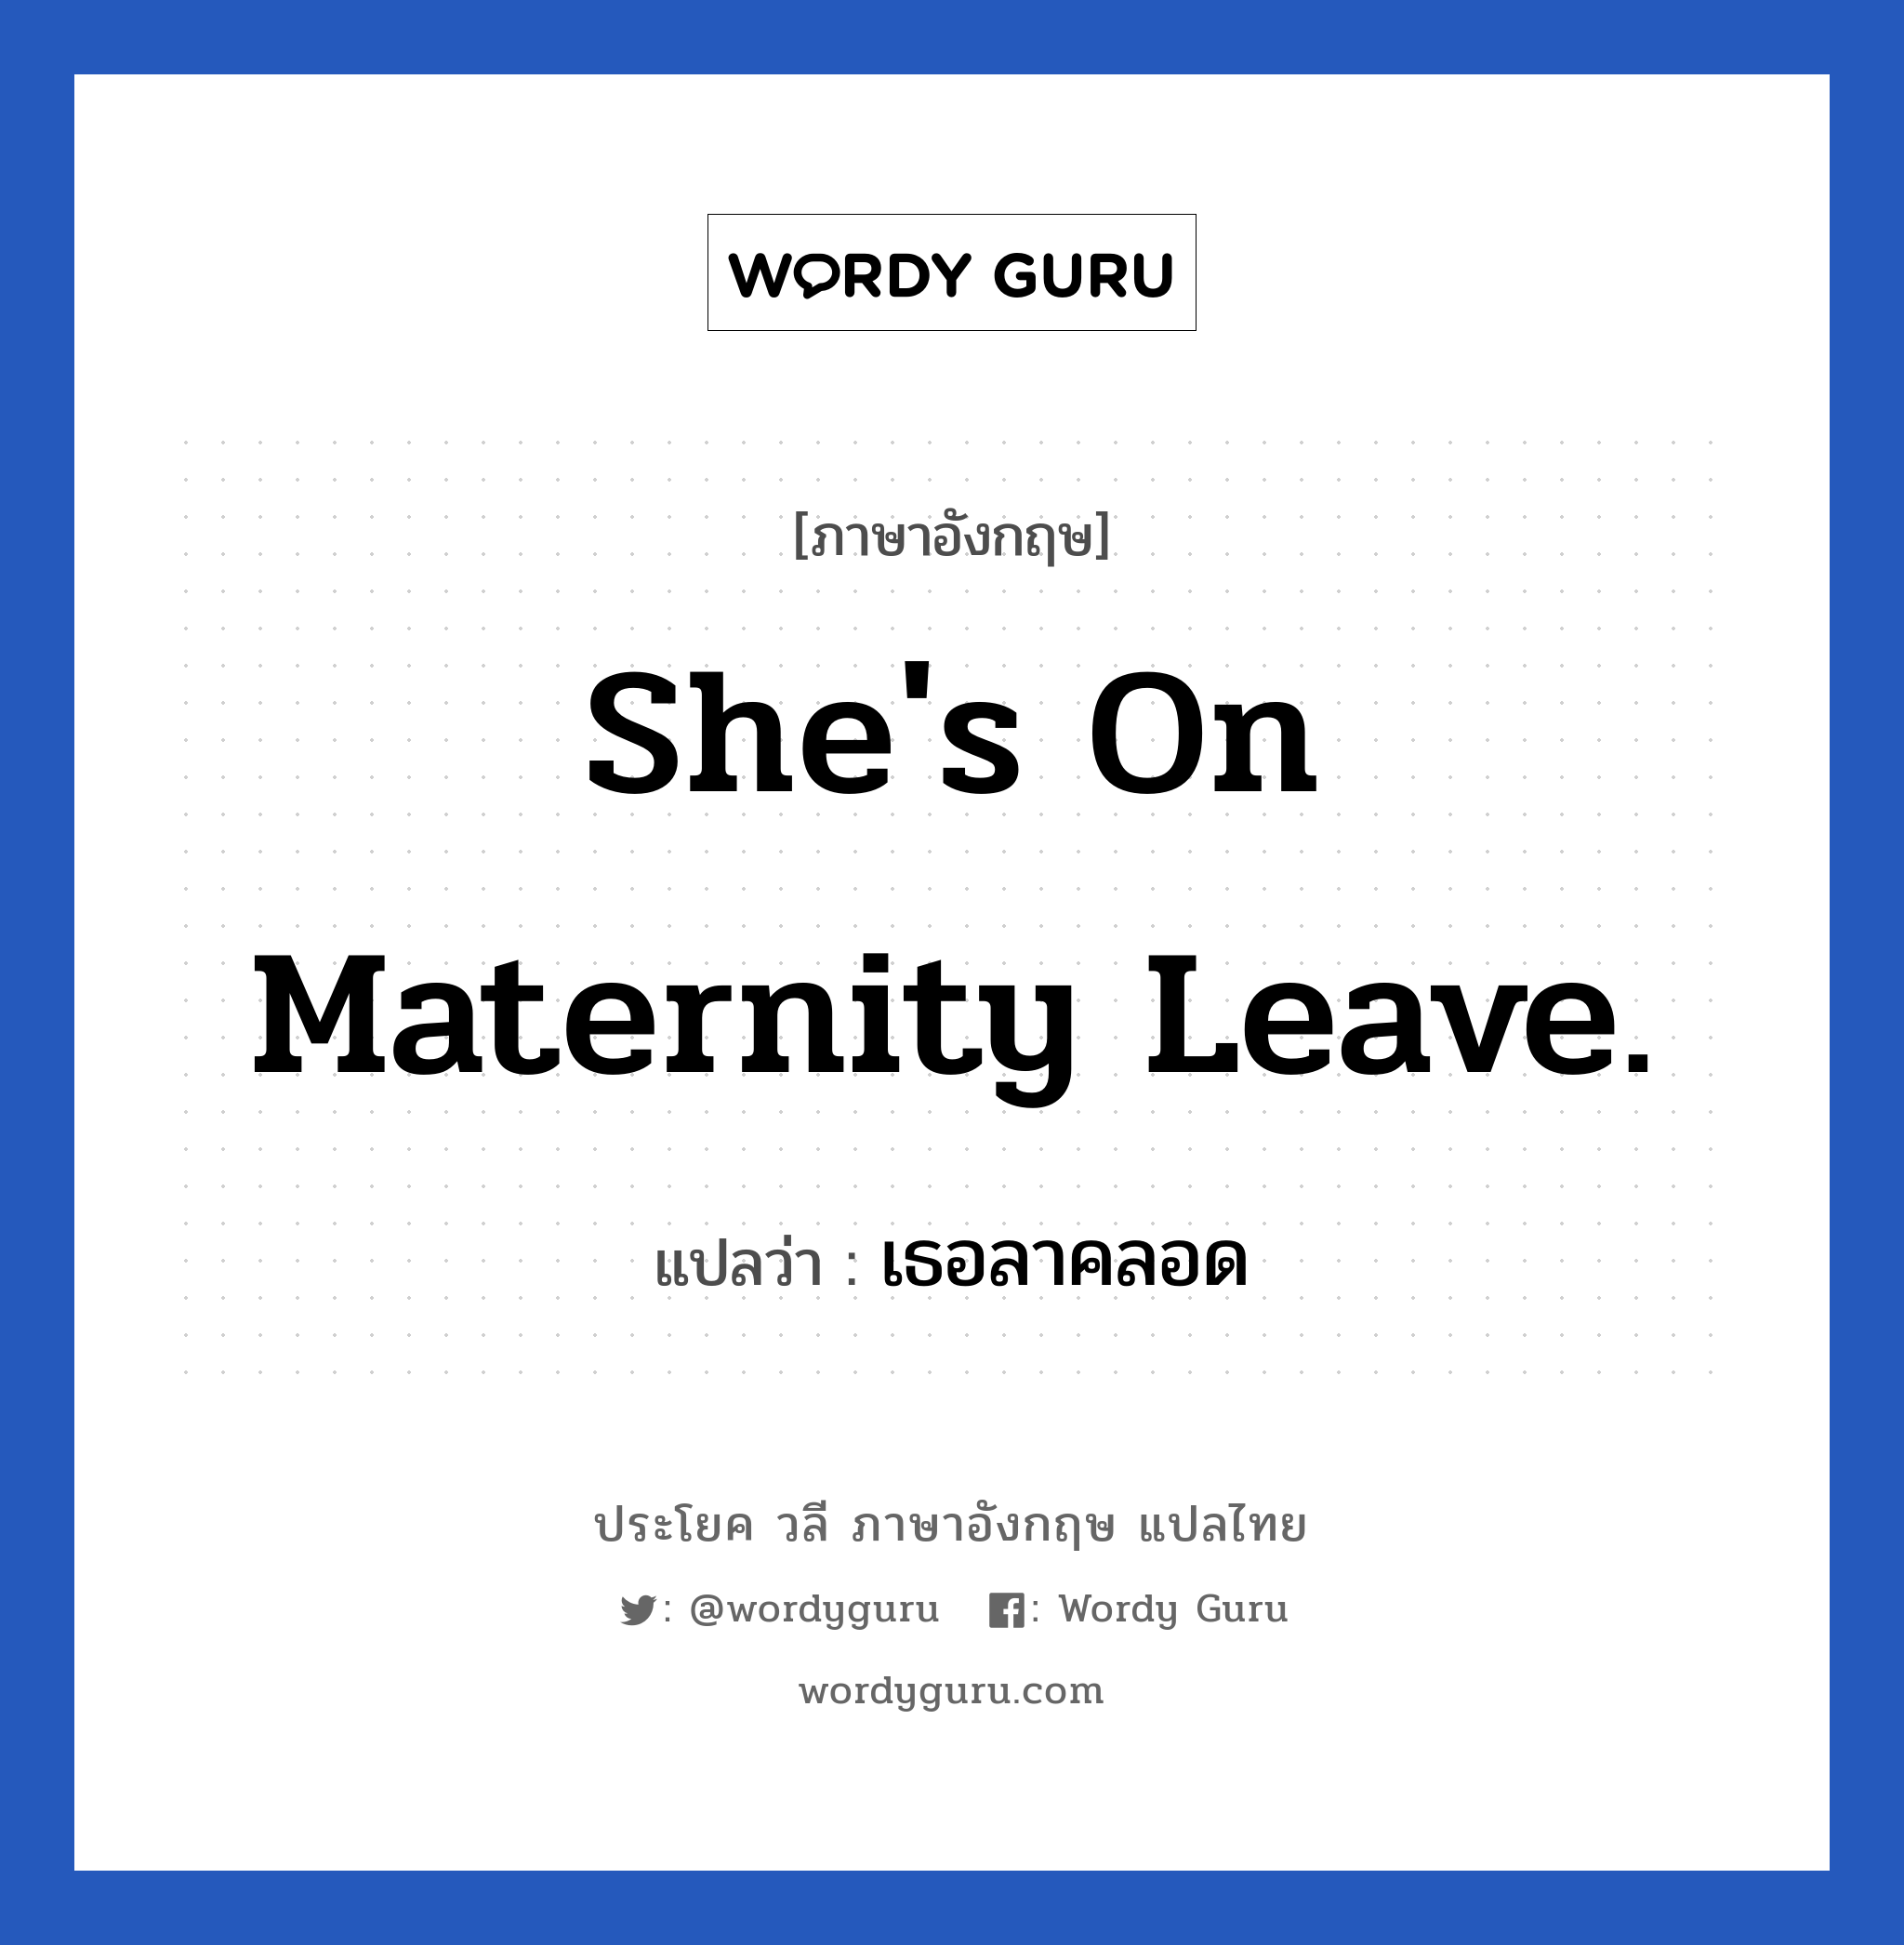 เธอลาคลอด ภาษาอังกฤษ?, วลีภาษาอังกฤษ เธอลาคลอด แปลว่า She's on maternity leave.